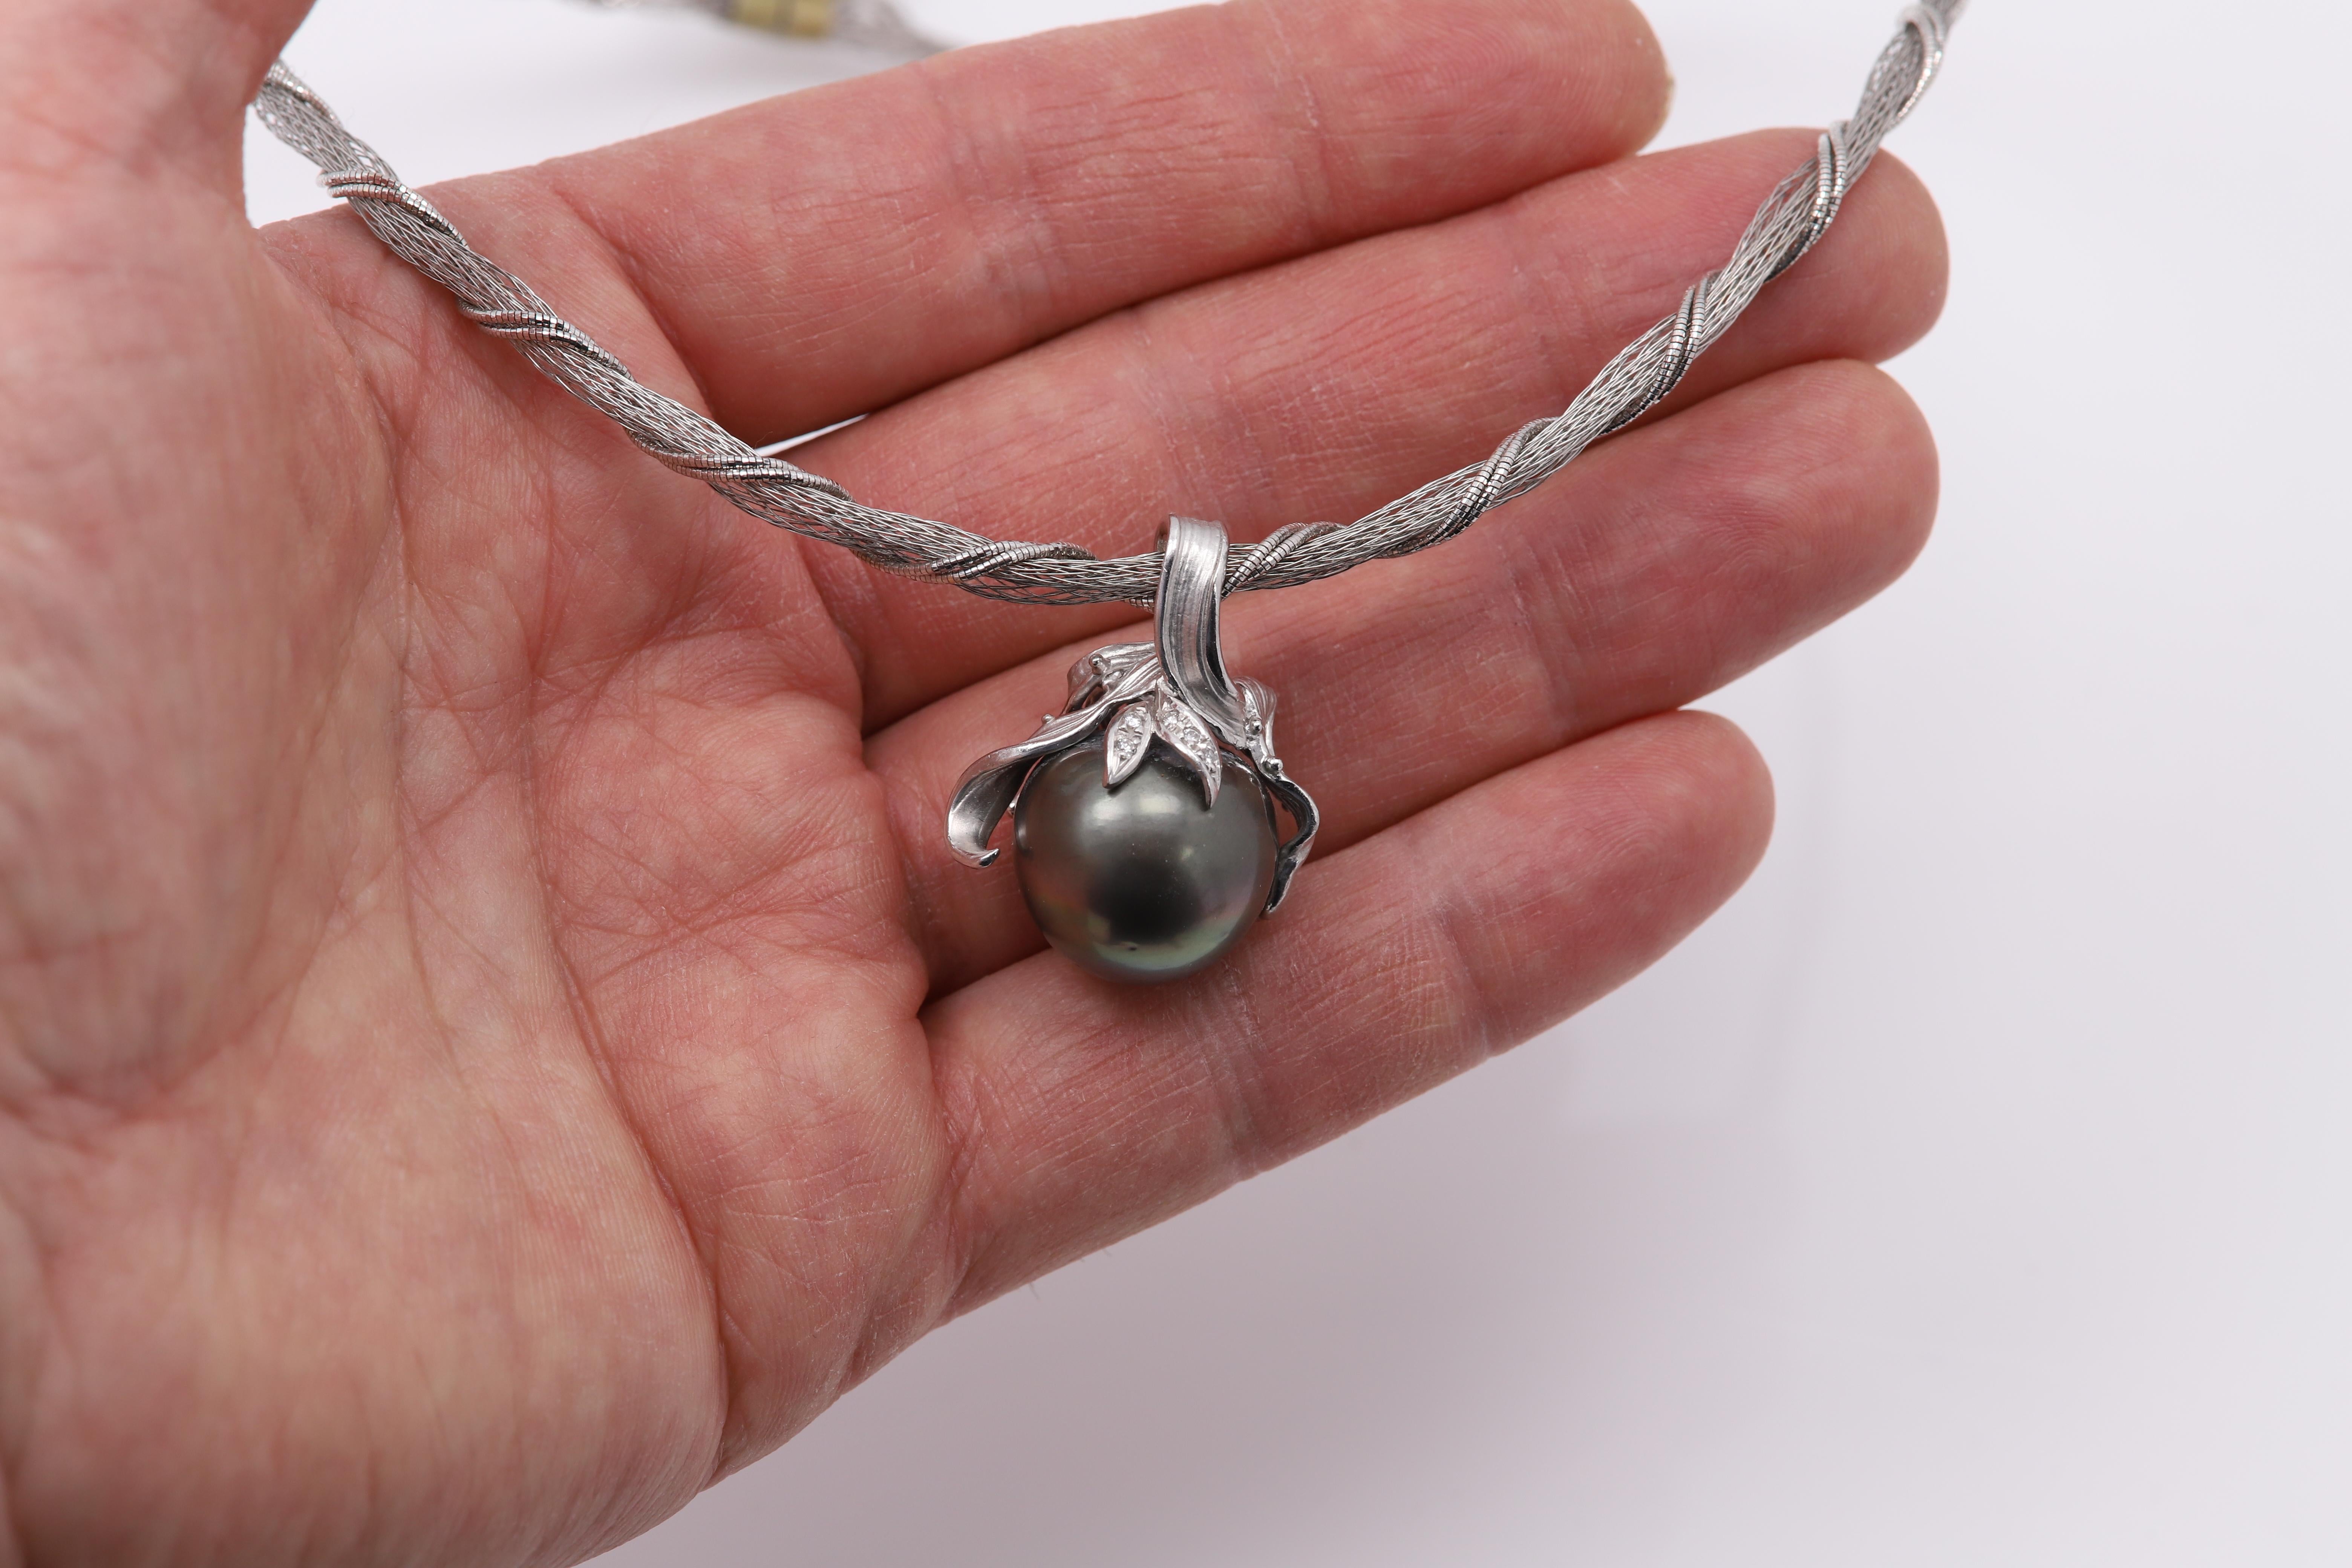 Beeindruckende Halskette  mit einem sehr großen Pearl-Anhänger

Perlengröße ca. 17mm
Graue Südseeperle
Die Perle ist in Platin 950 gefasst und kann von der Kette/Halskette abgenommen werden.
Es handelt sich um einen eigenständigen Anhänger. Dieser